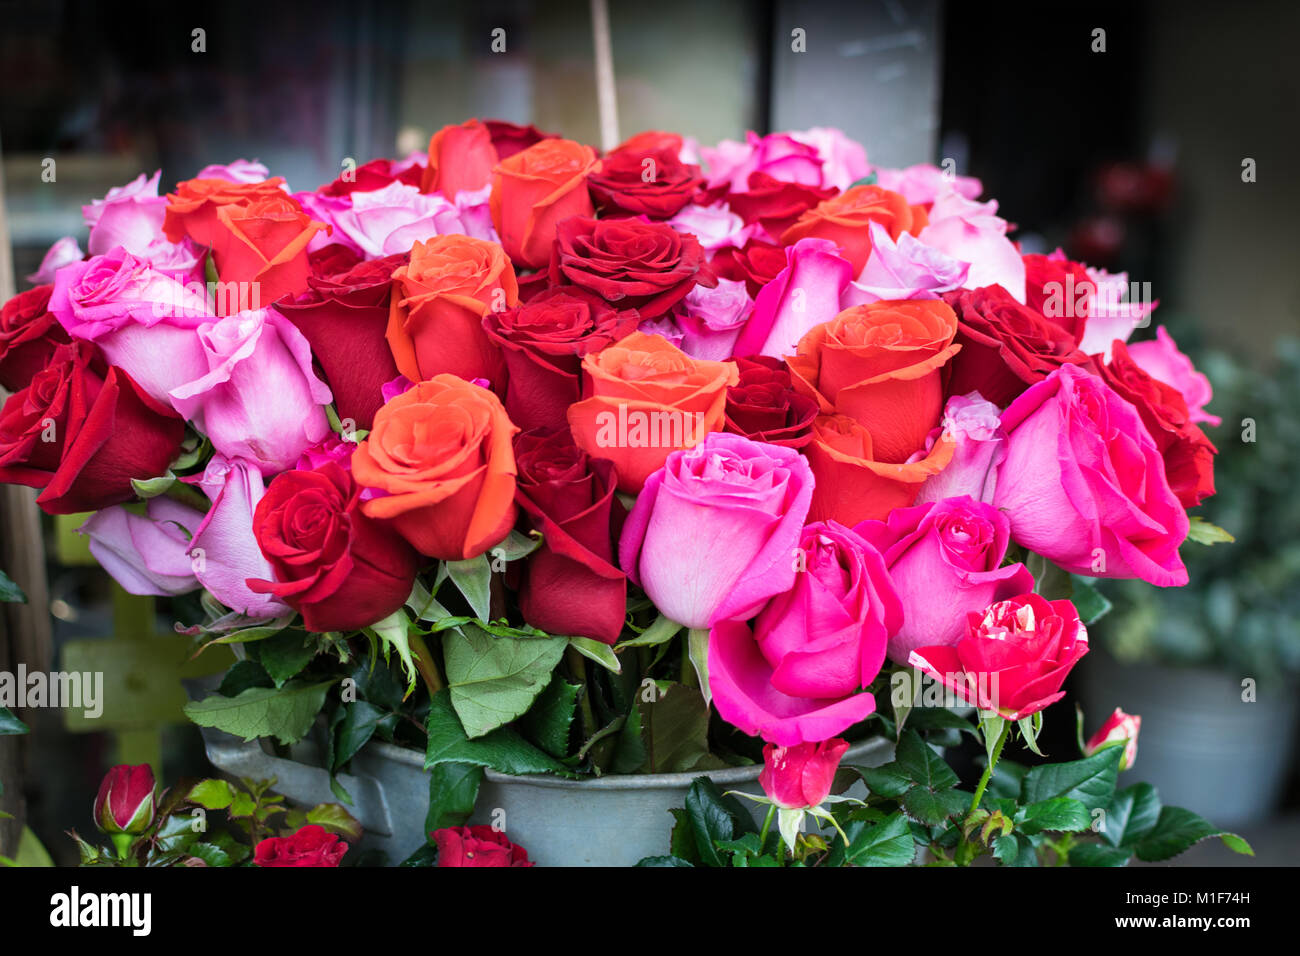 Ramos de rosas ramos de rosas fotografías e imágenes de alta resolución -  Página 5 - Alamy